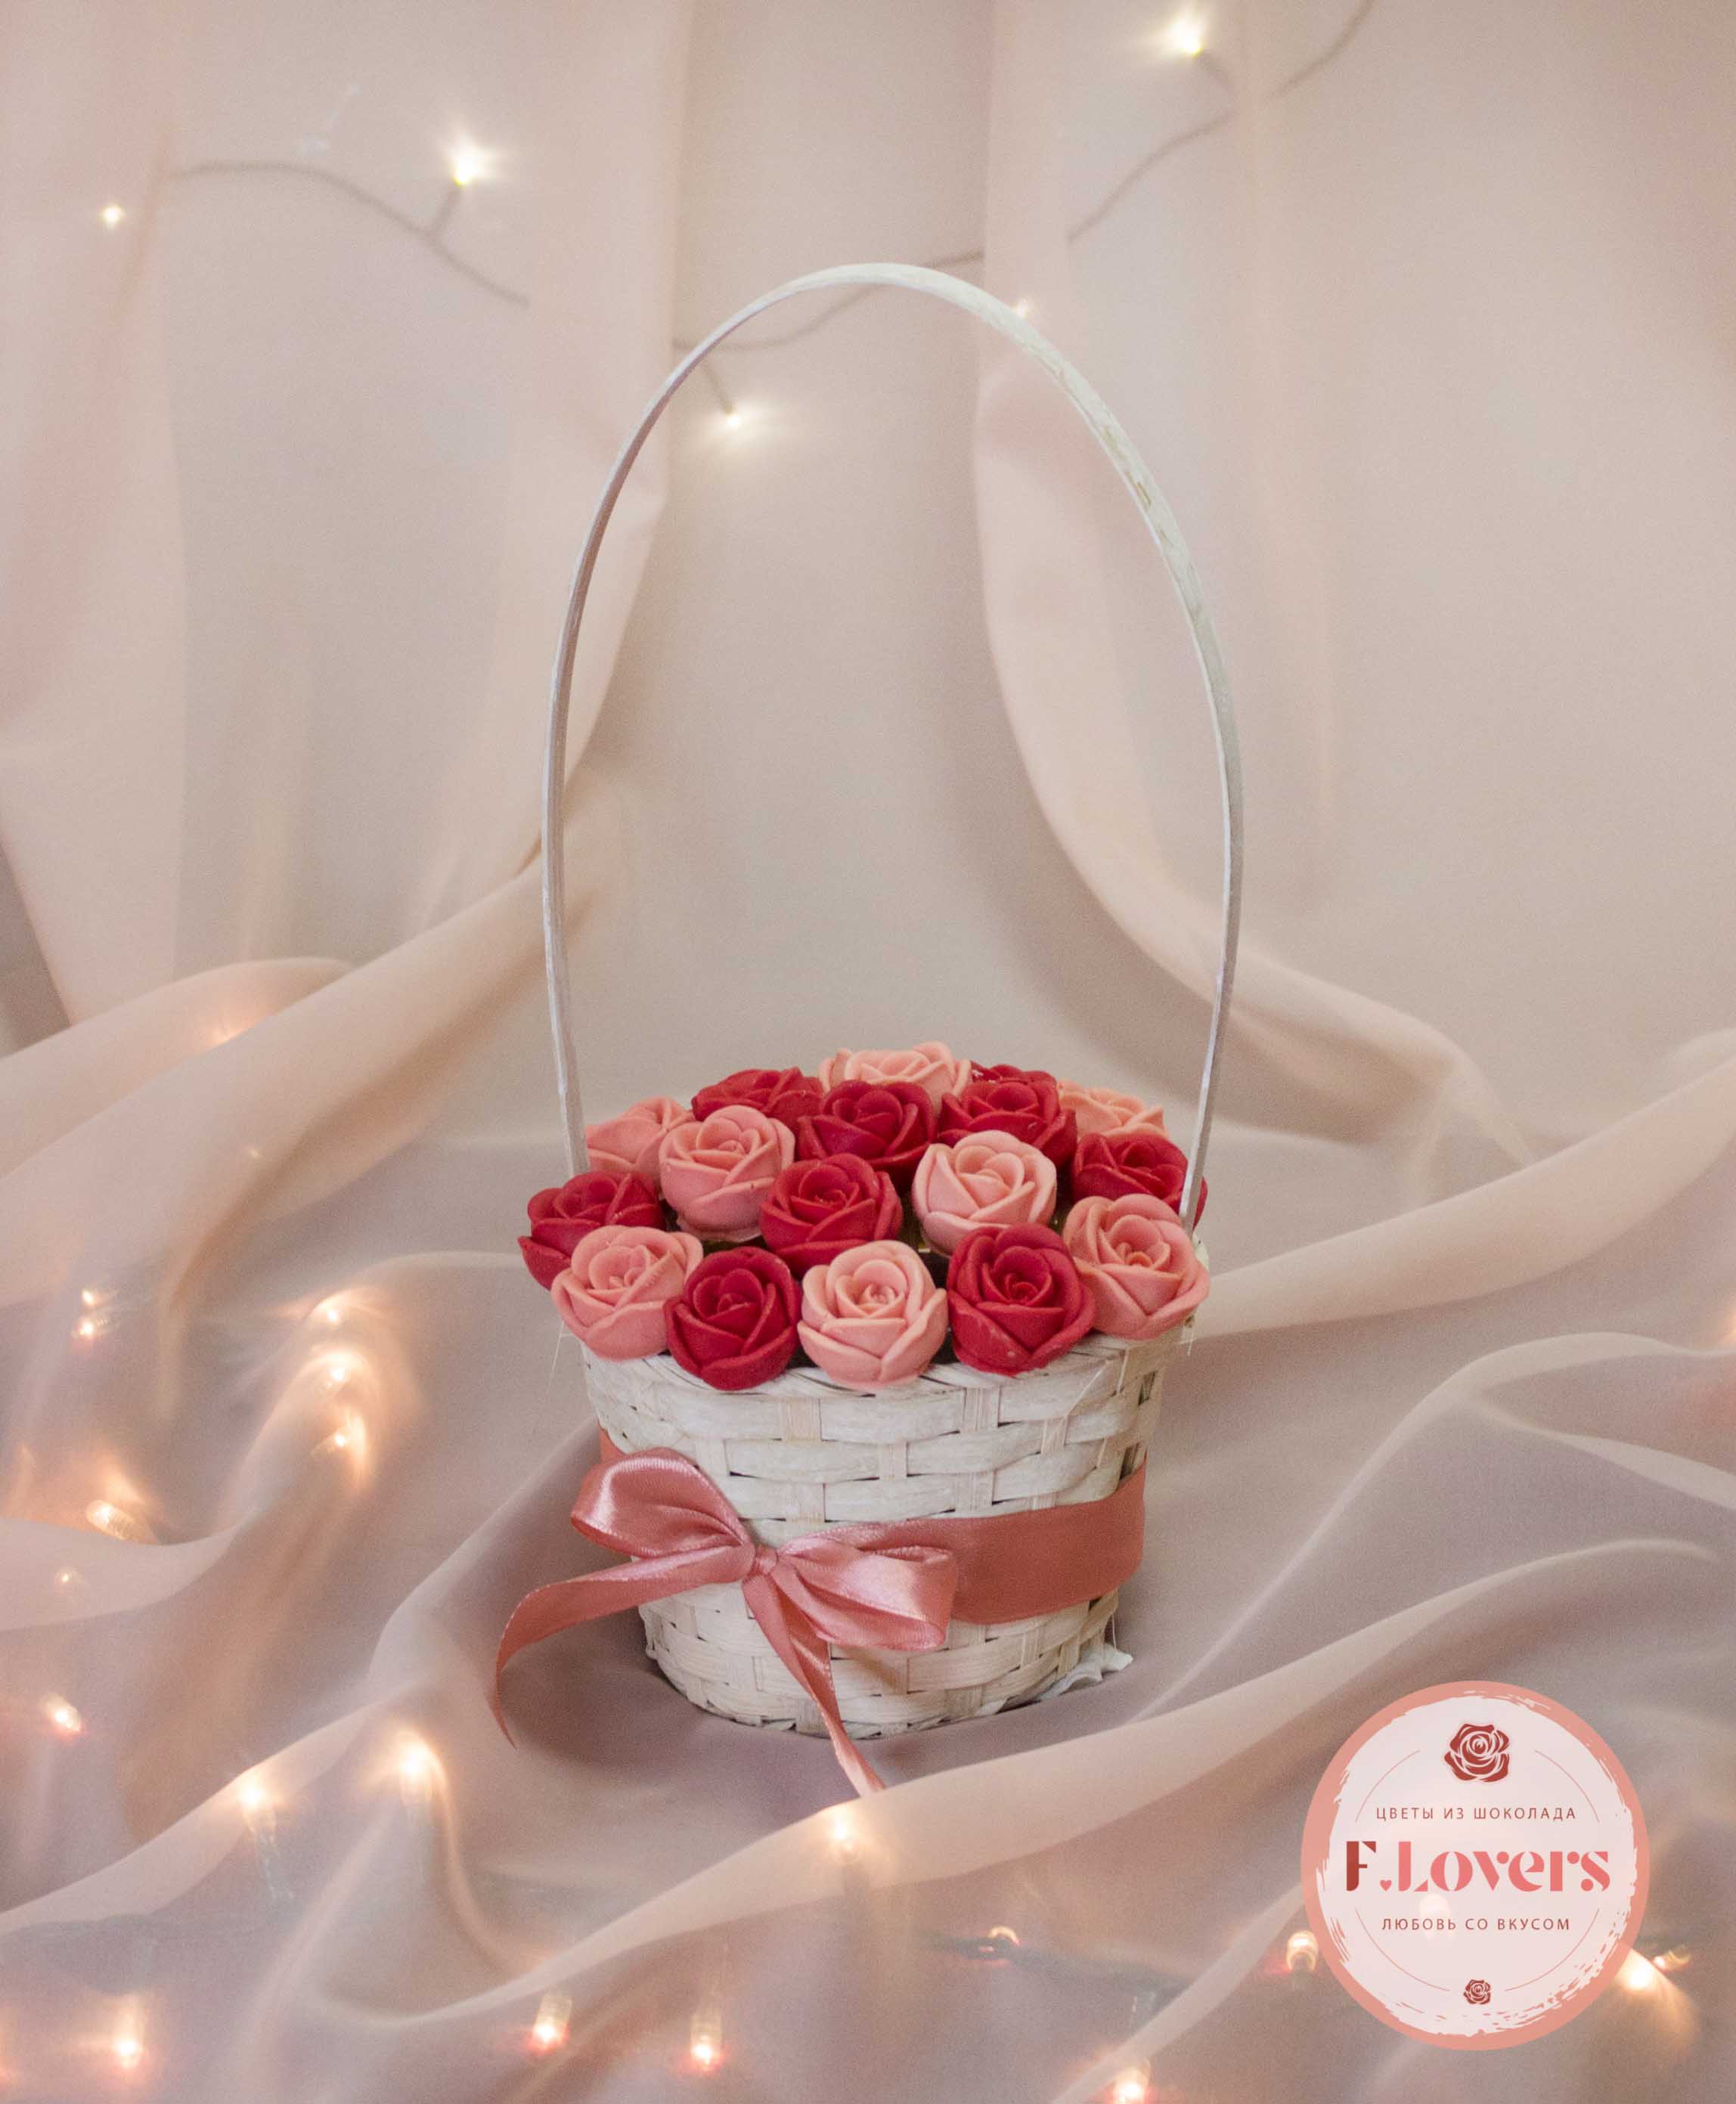 19 шоколадных роз в корзине - Цветы из бельгийского шоколада. Студия  F.Lovers в Новосибирске